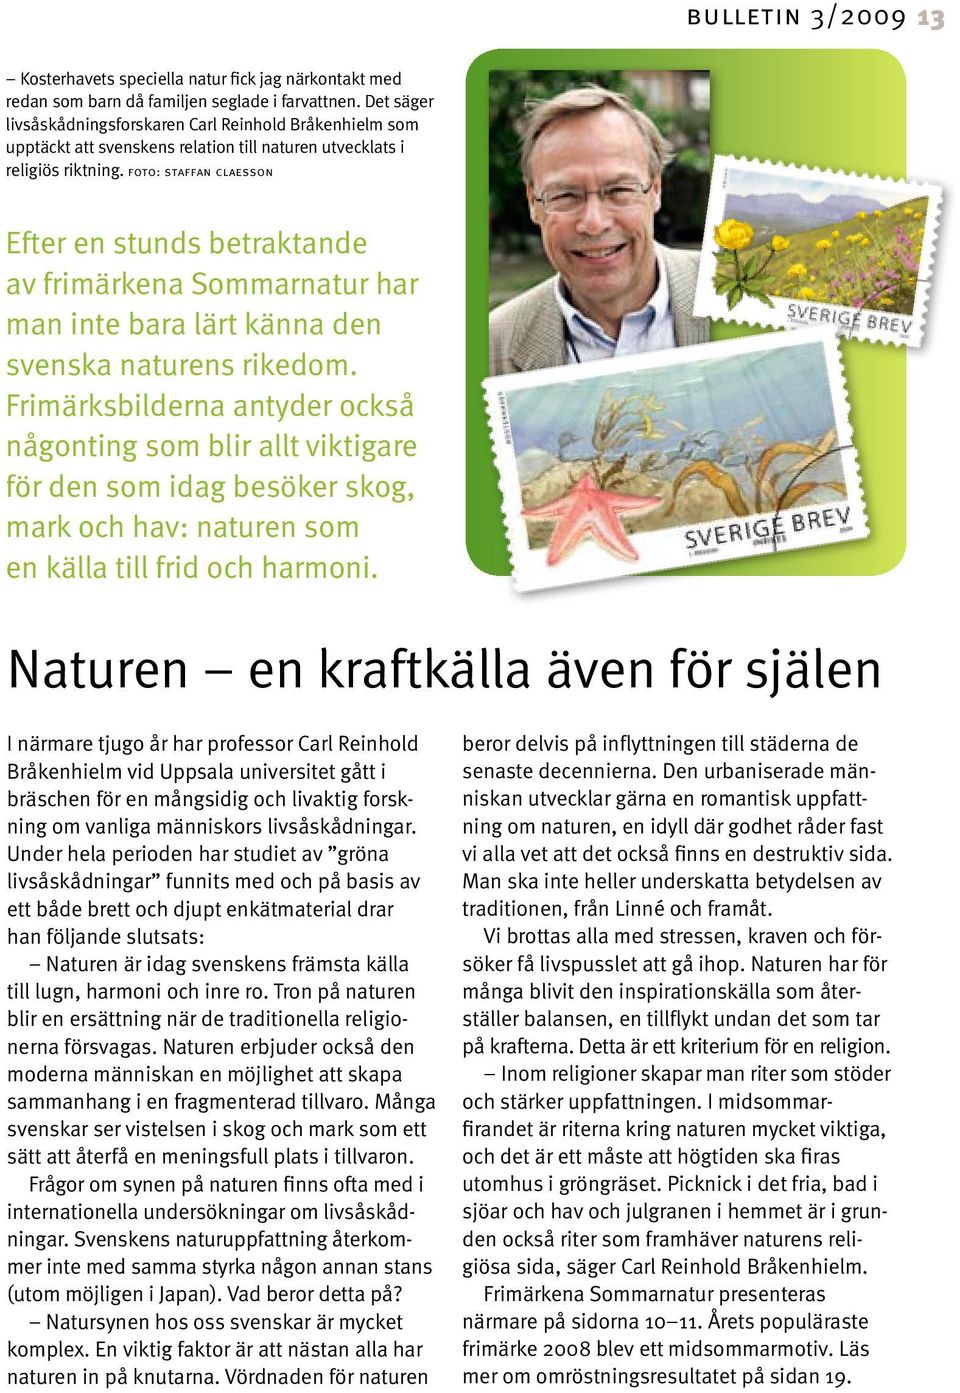 foto: staffan claesson Efter en stunds betraktande av frimärkena Sommarnatur har man inte bara lärt känna den svenska naturens rikedom.